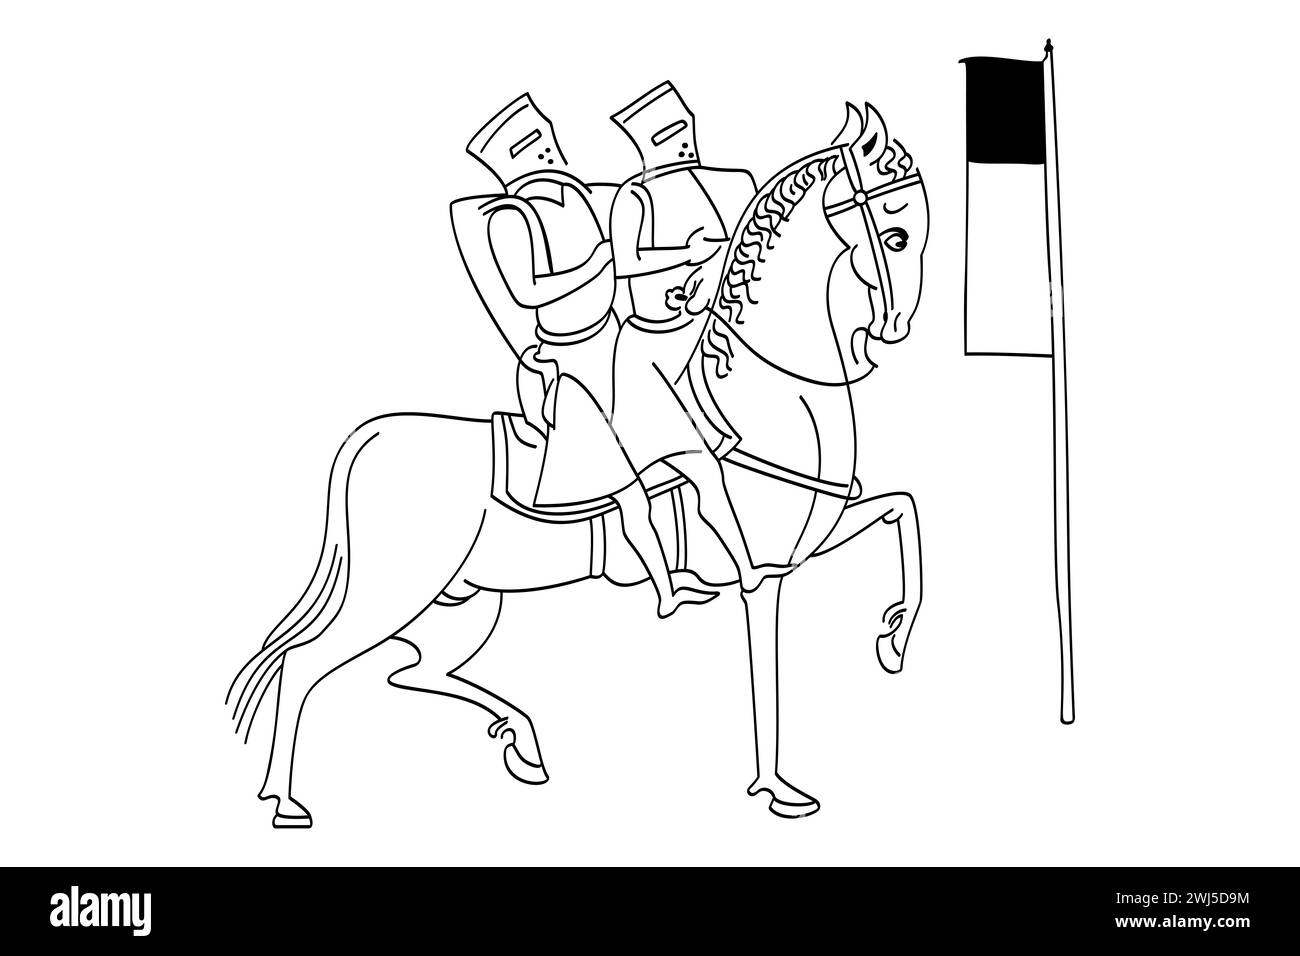 Siegel des Tempelritters mit dem Banner, ein Symbol, das zwei Ritter zeigt, die auf einem Pferd reiten. Das Templersiegel, wie es im 13. Jahrhundert dargestellt wurde. Stockfoto